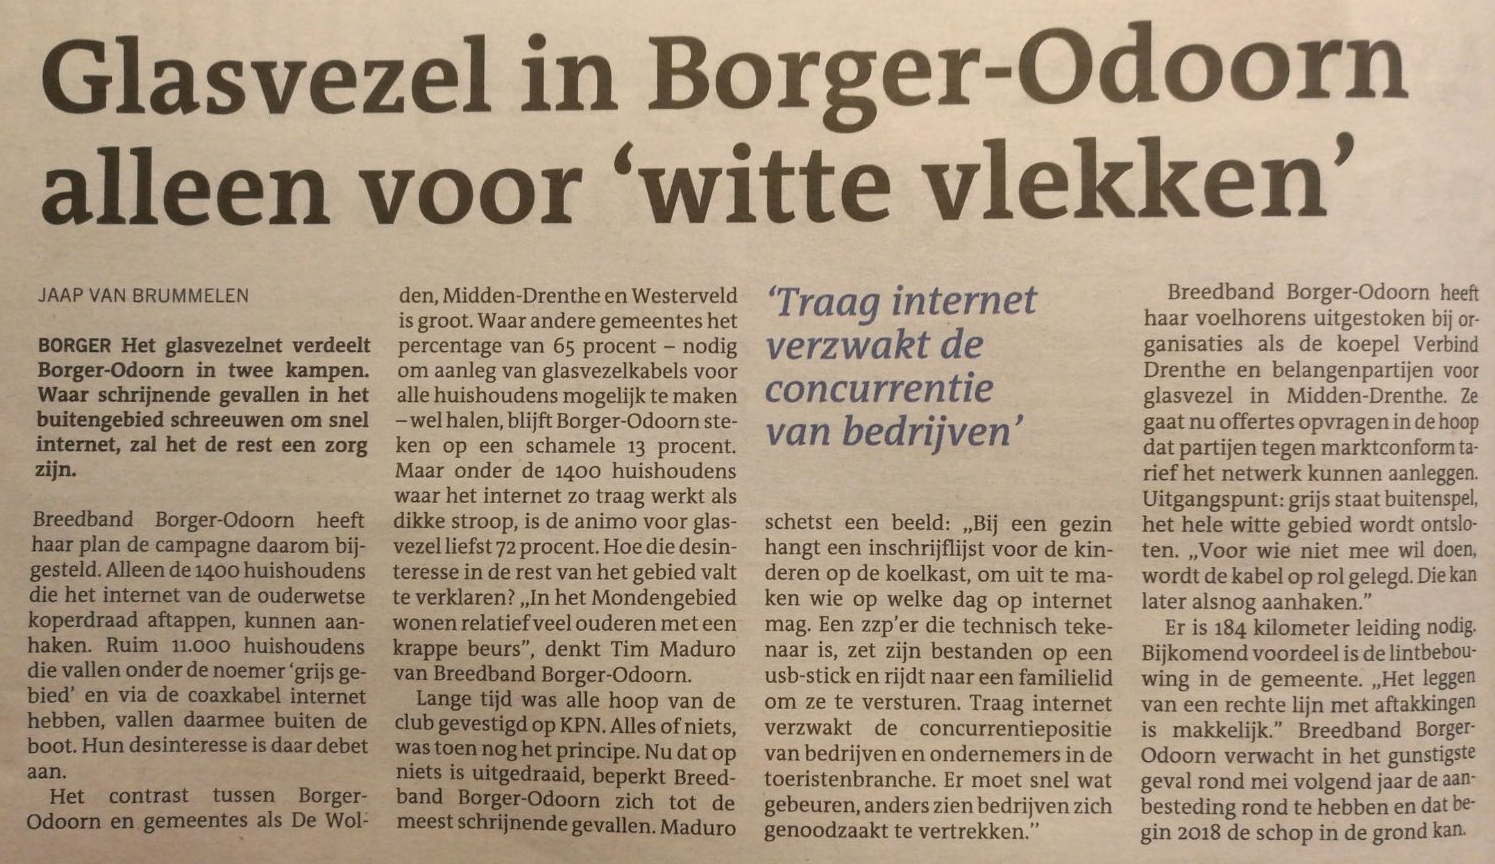 Schrijnende gevallen met internetverbinding in Borger-Odoorn